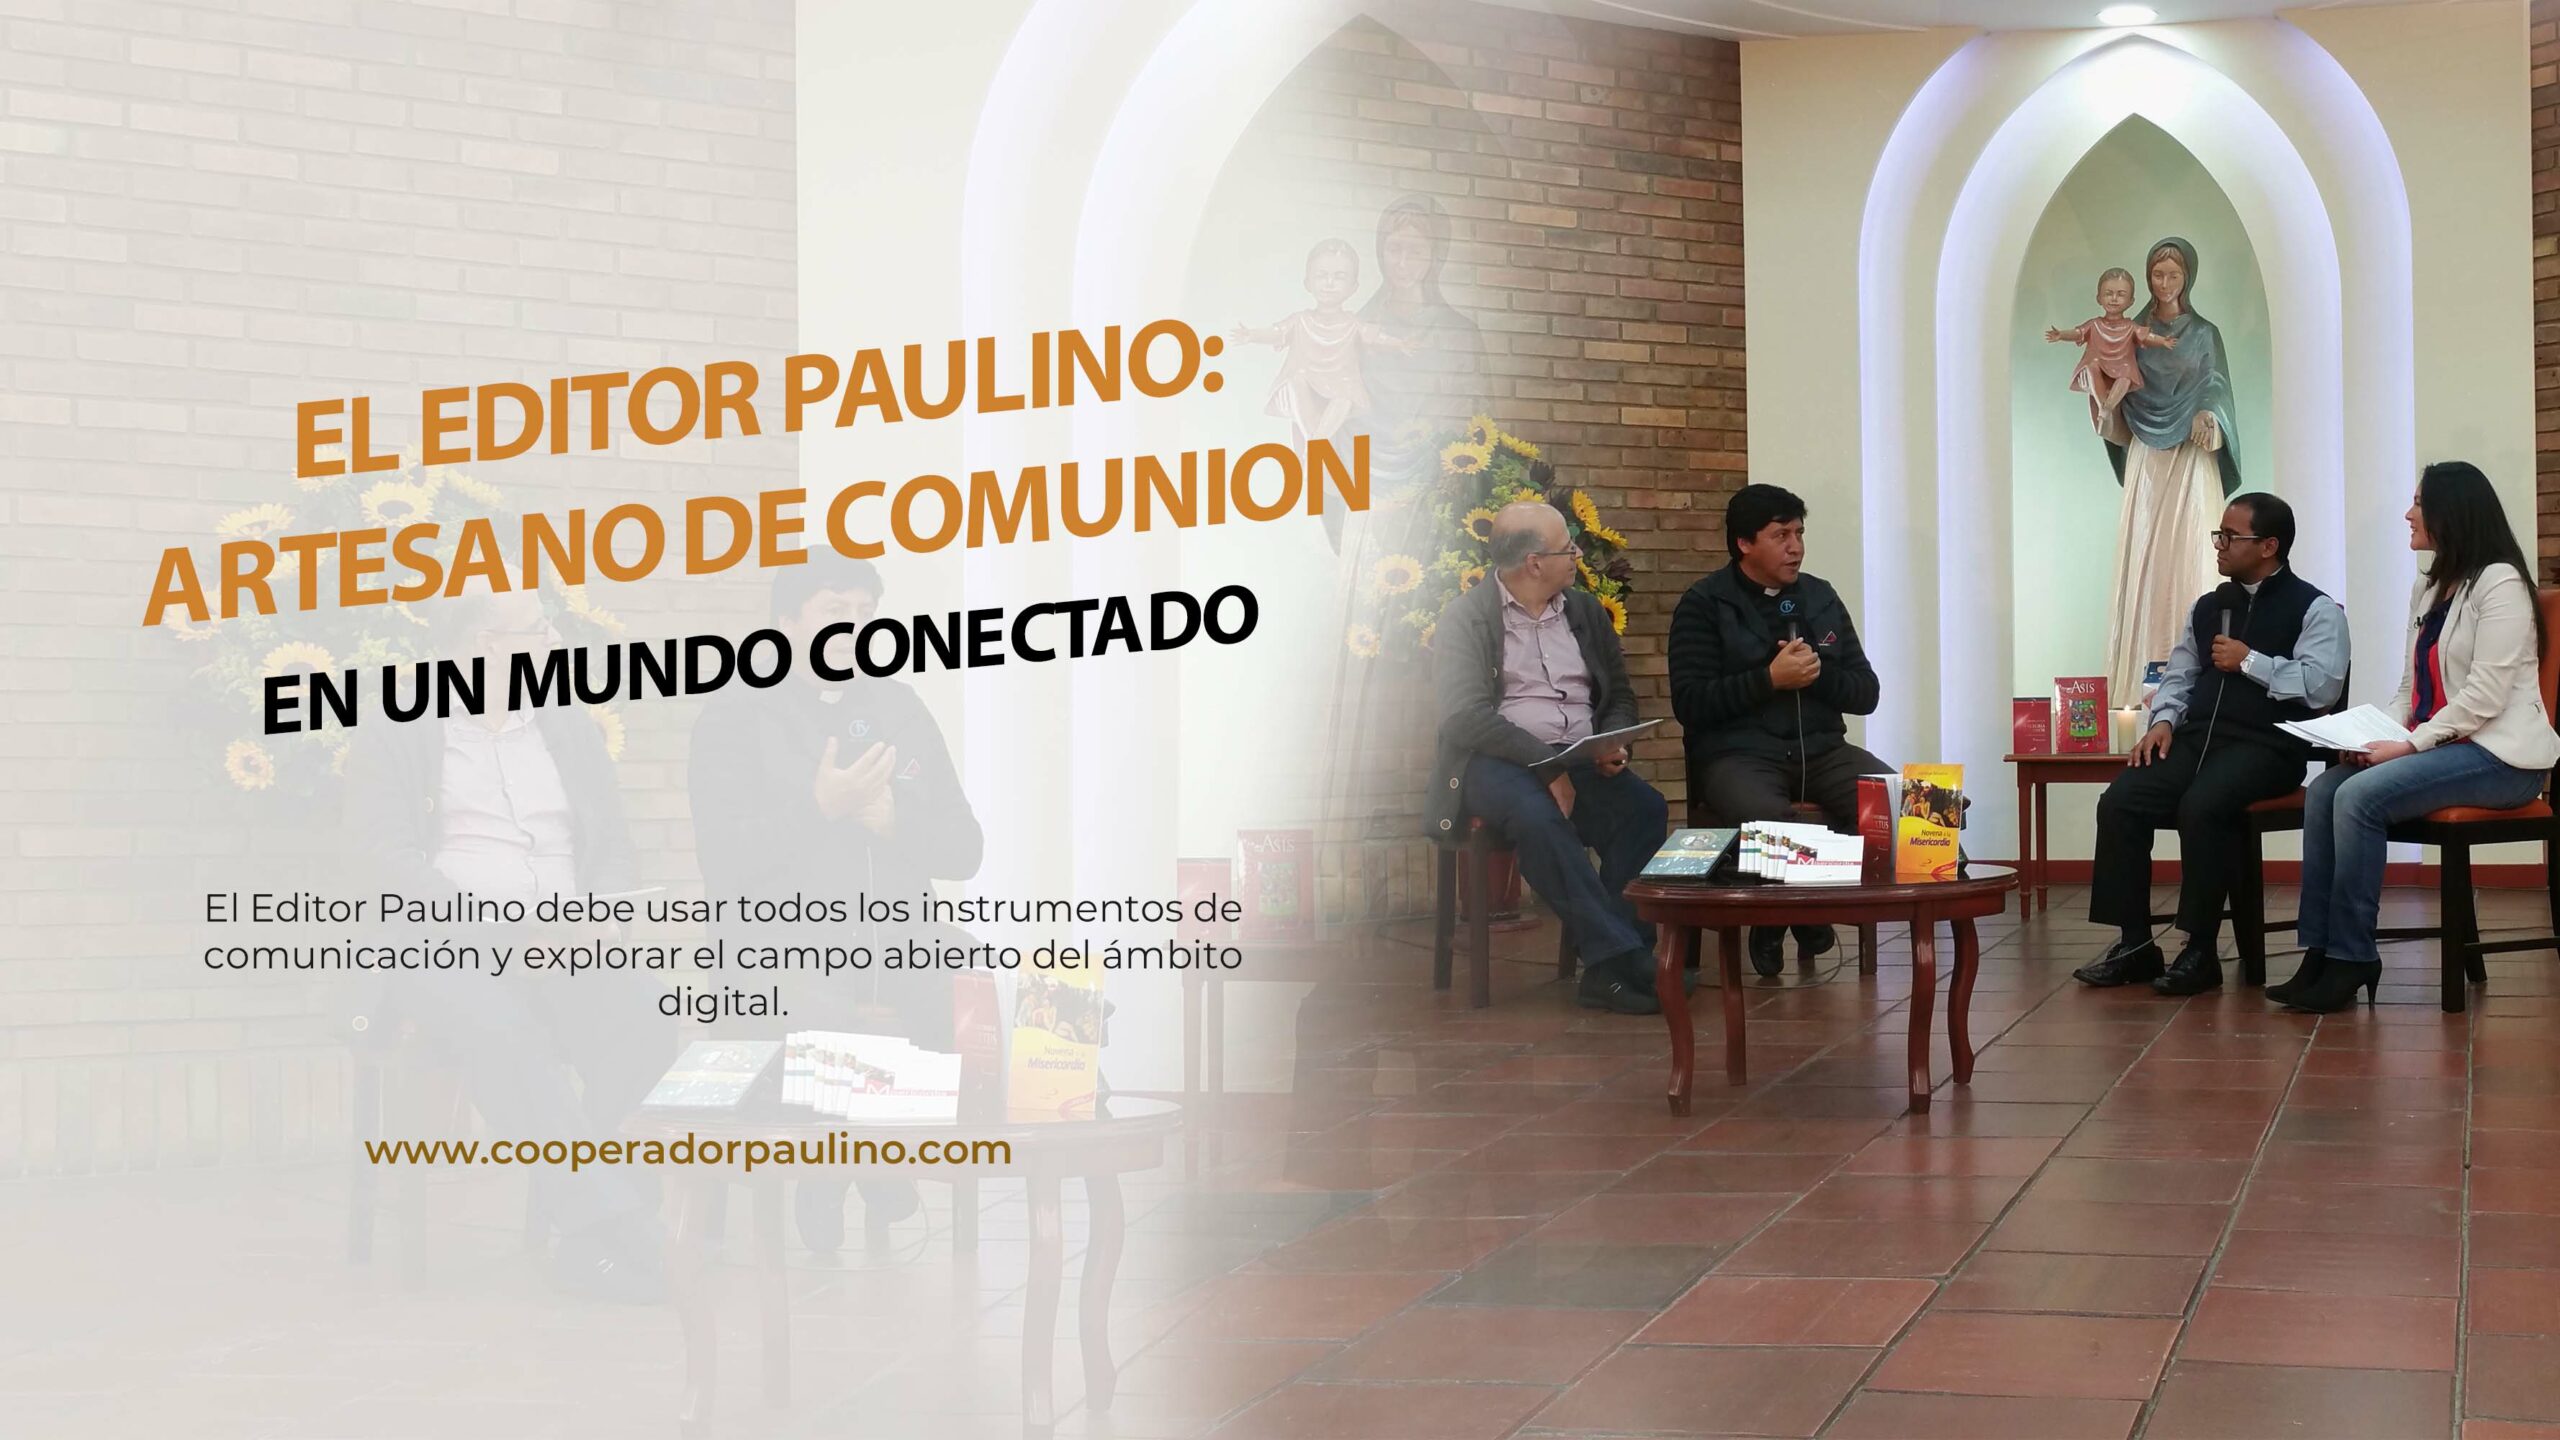 EL EDITOR PAULINO:ARTESANO DE COMUNION EN UN MUNDO CONECTADO